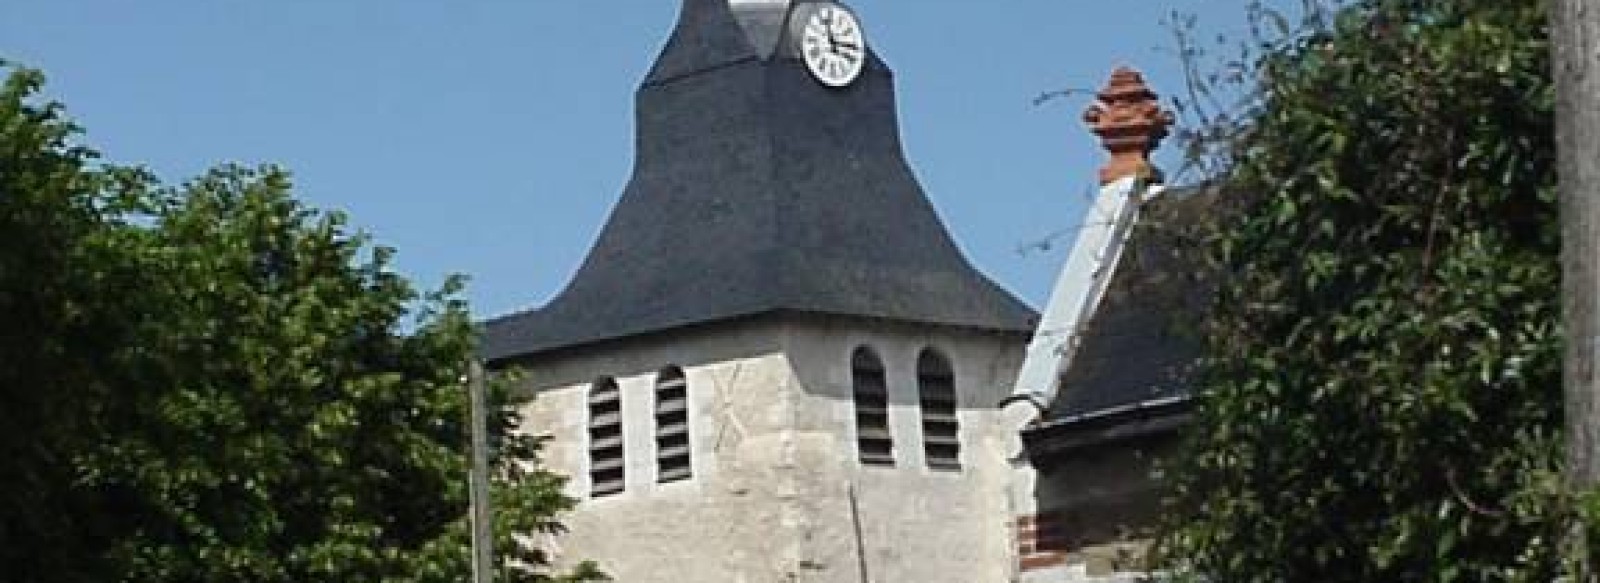 Feneu, au fil de la Mayenne